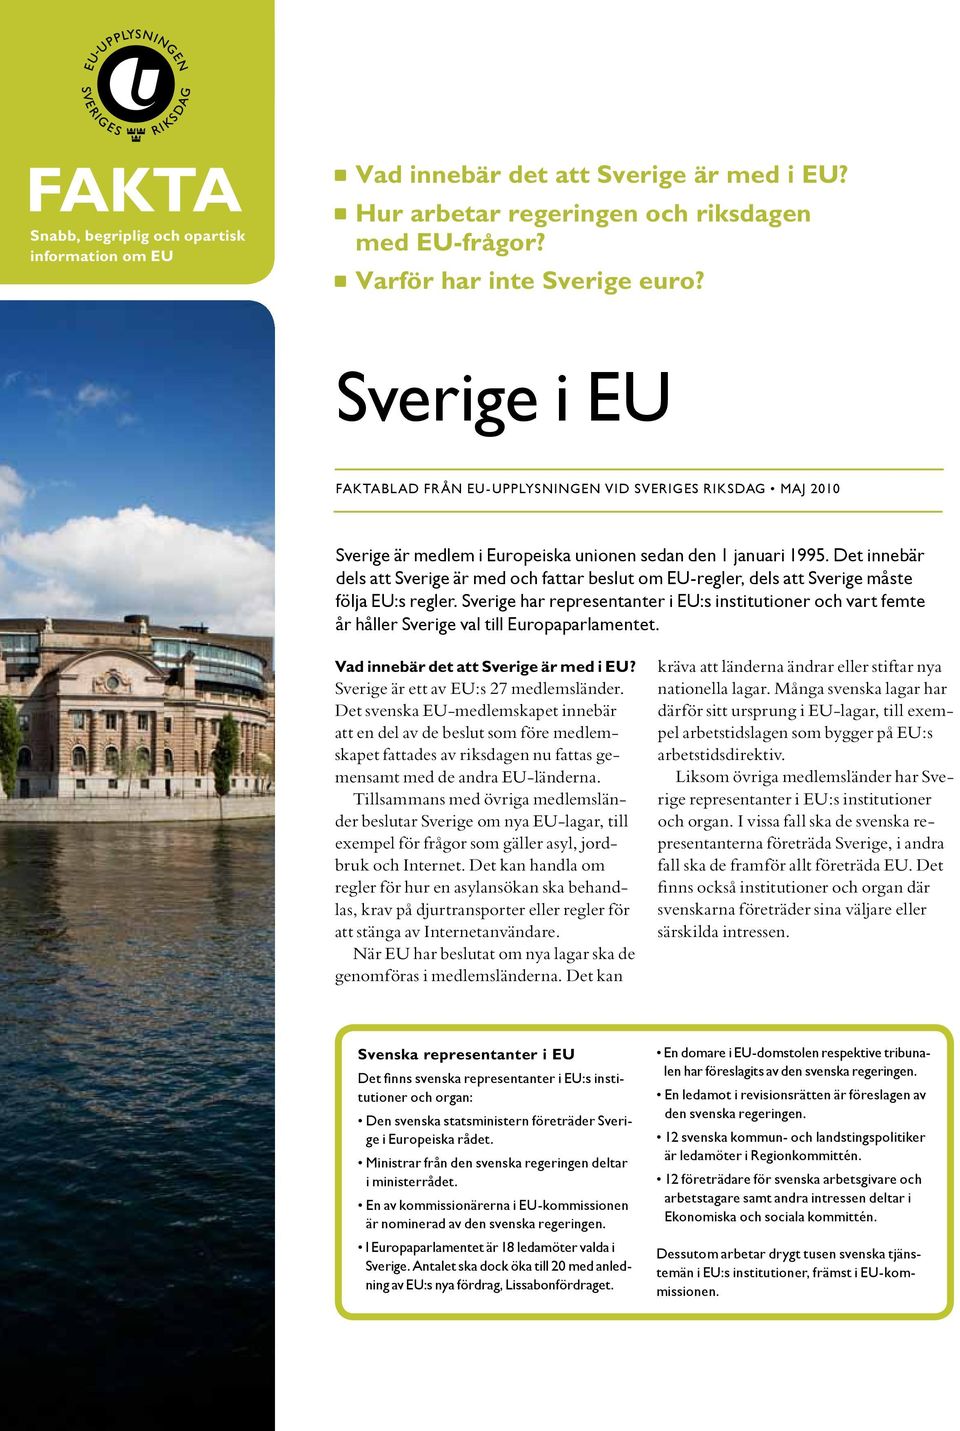 Det innebär dels att Sverige är med och fattar beslut om EU-regler, dels att Sverige måste följa EU:s regler.